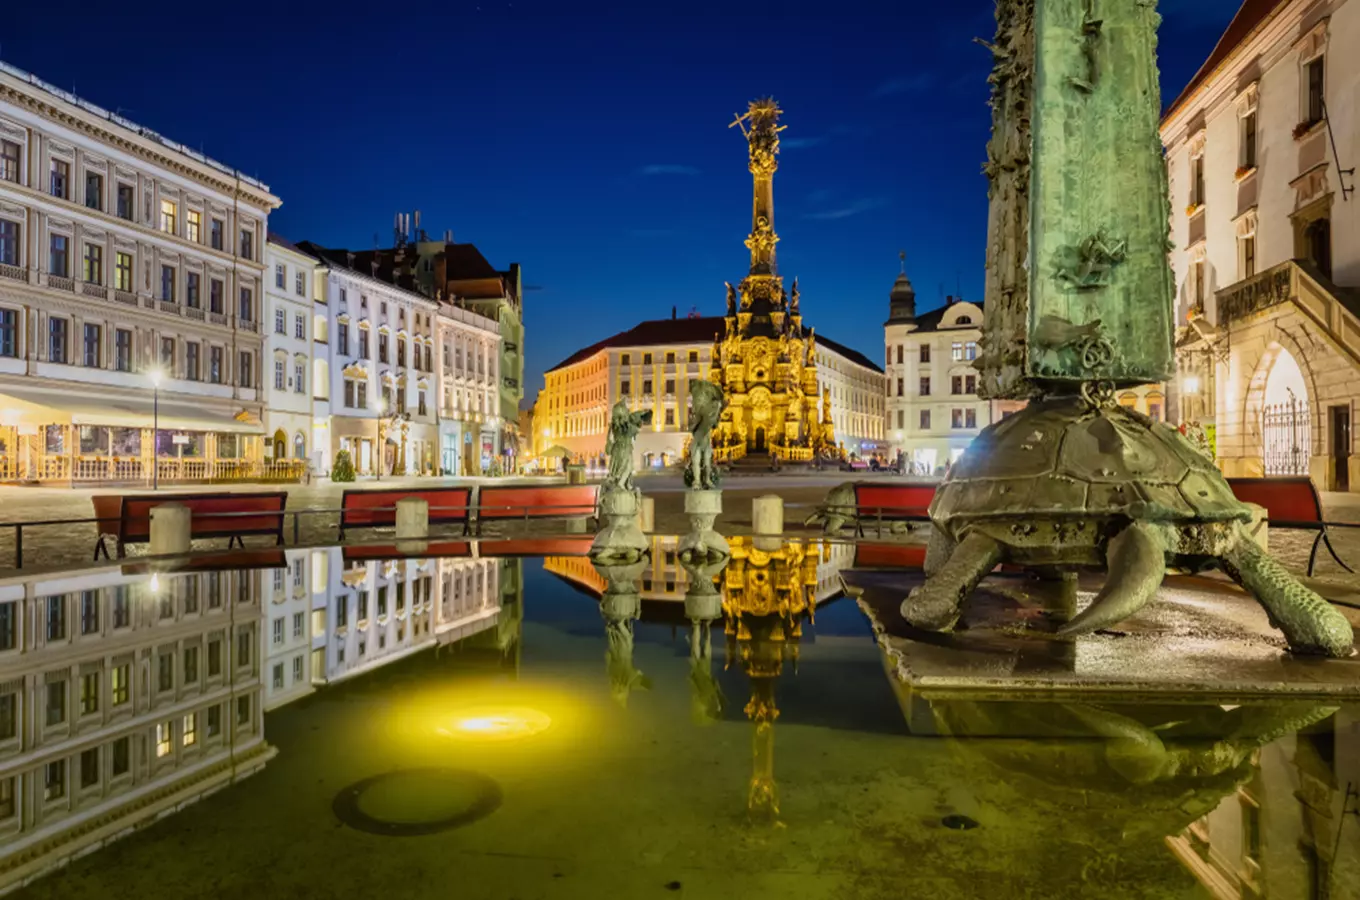 Užijte si prohlídku Olomouce s průvodcem, ukáže vám všechny tajná zákoutí města